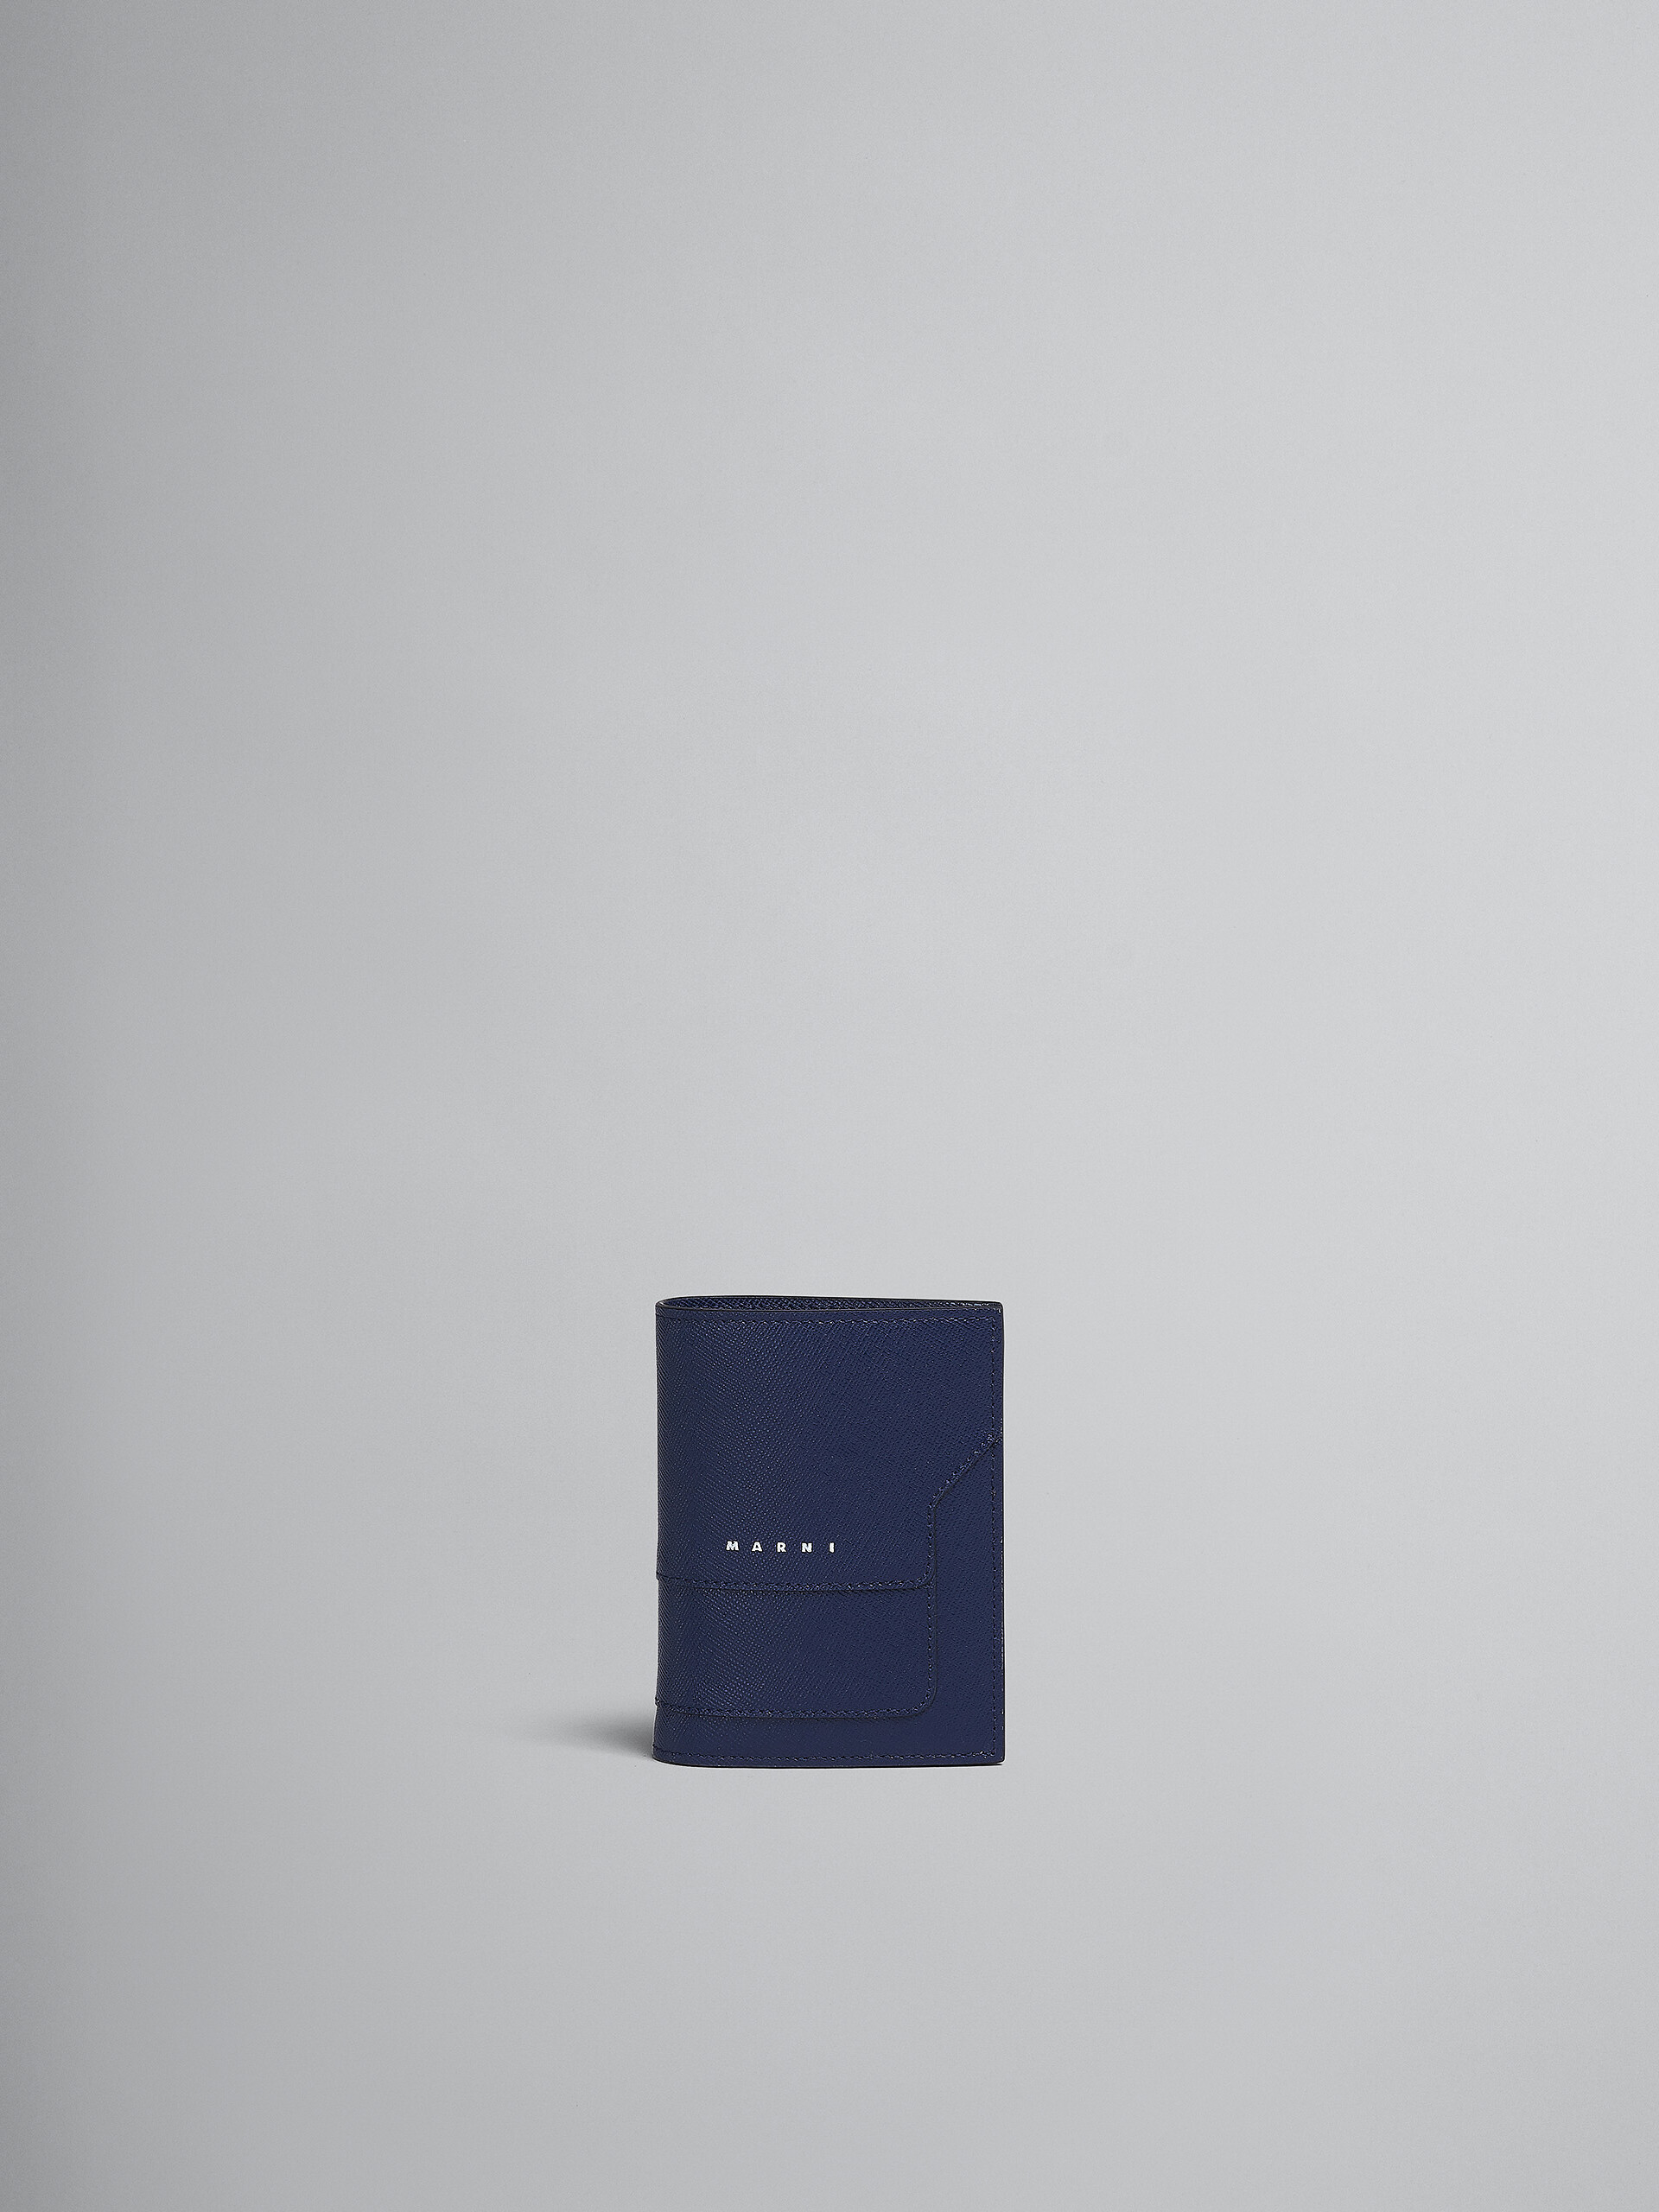 Zweifache Faltbrieftasche aus blauem Saffiano-Leder - Brieftaschen - Image 1